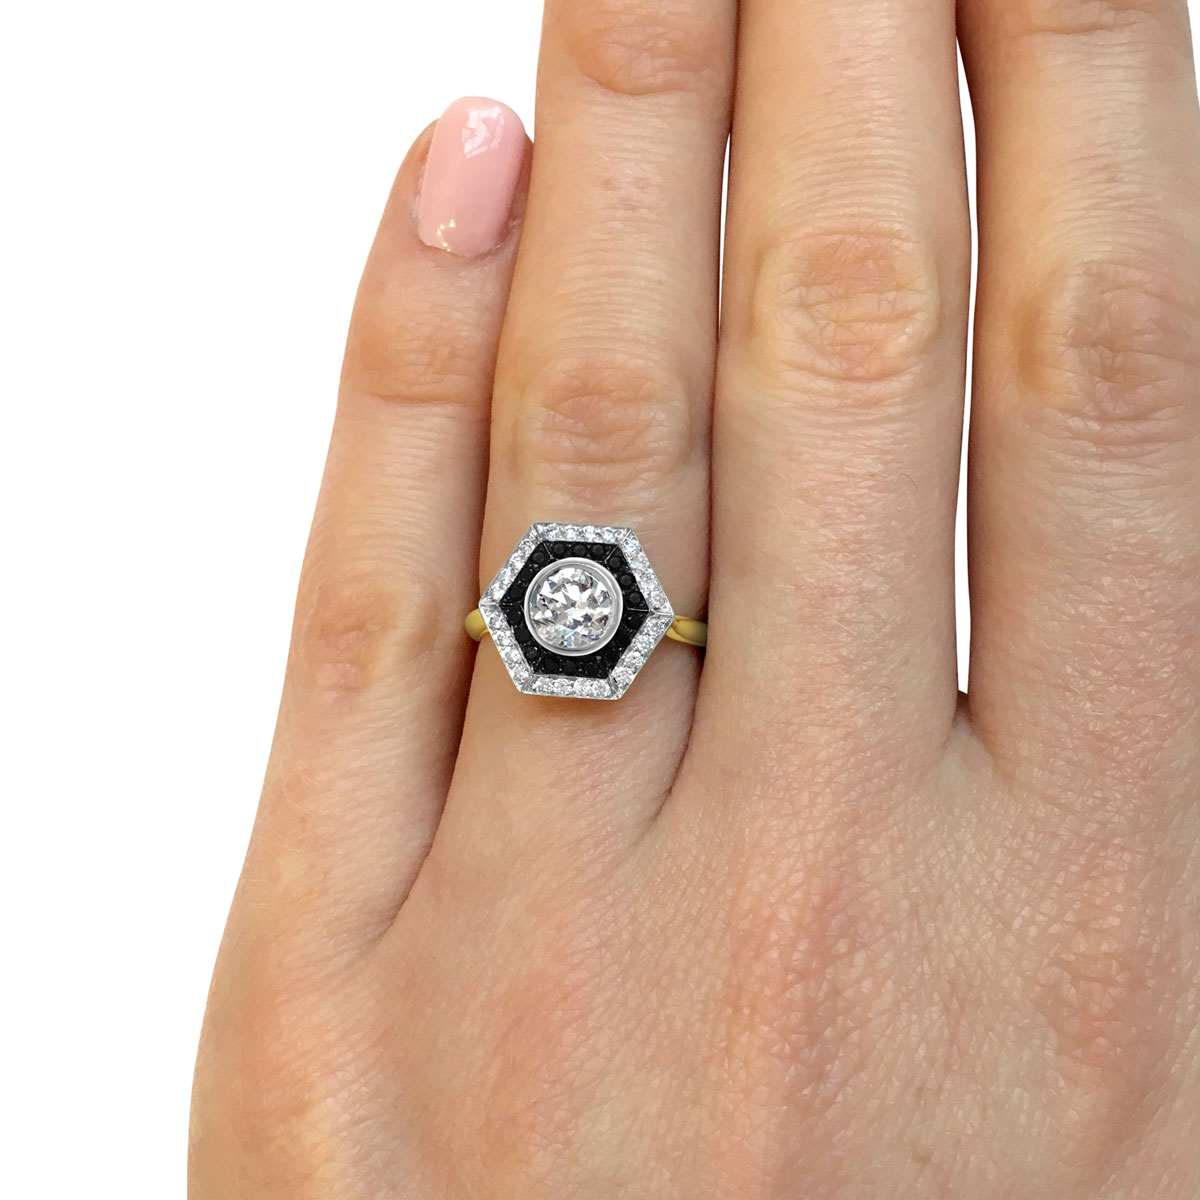 Bespoke Hexagonal Black & White Diamond Ring Top Hand Modelled